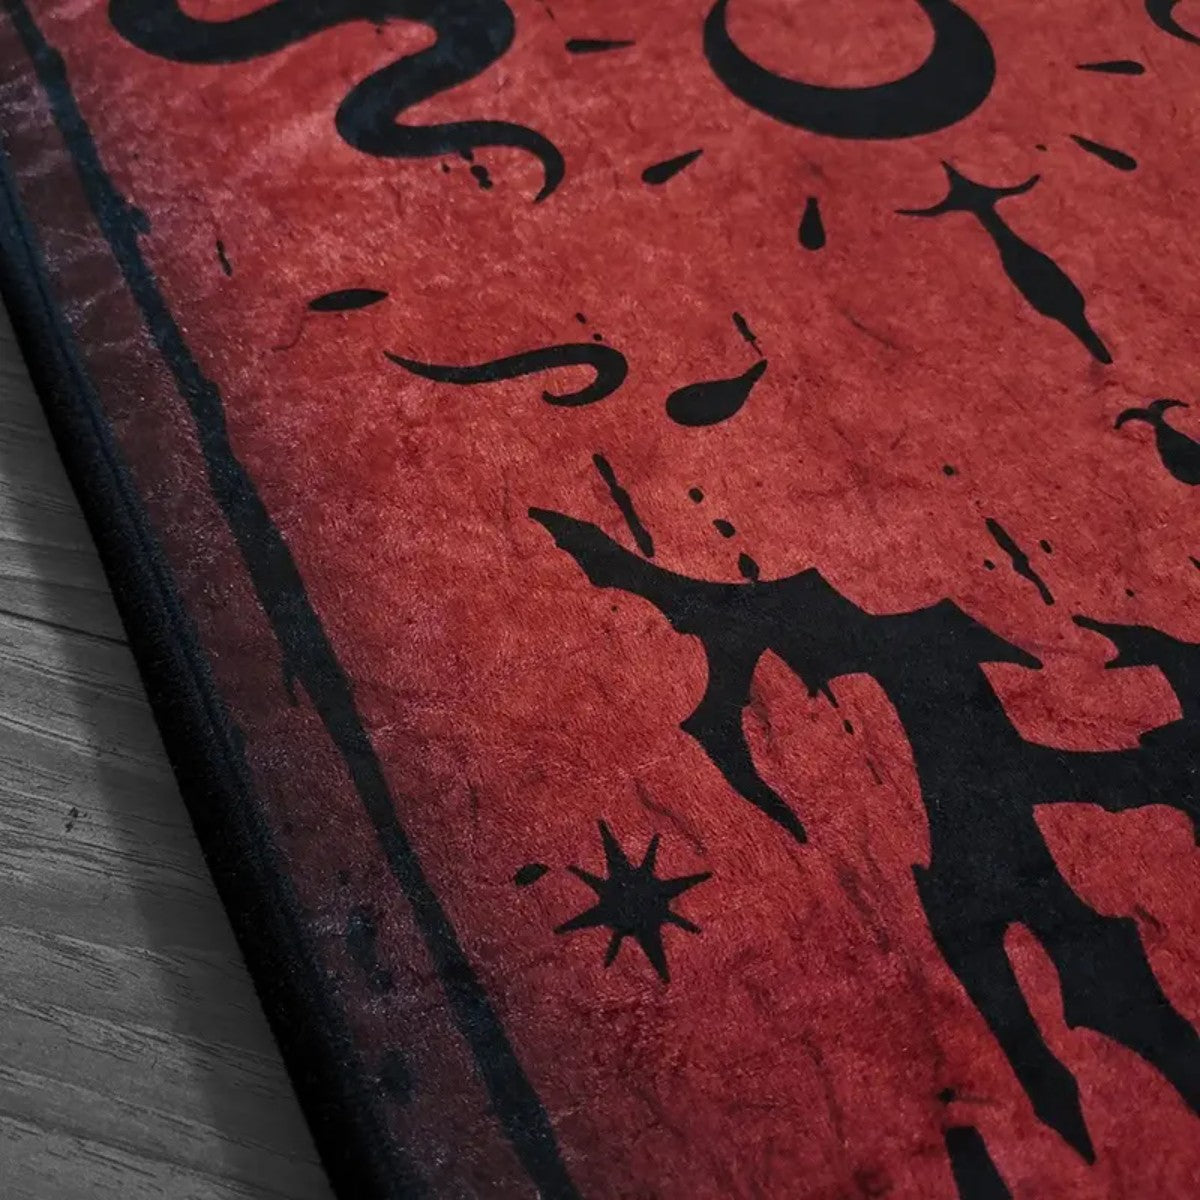 Gothic Red Coffin Serpent Carpet Halloween Non-Slip Rug